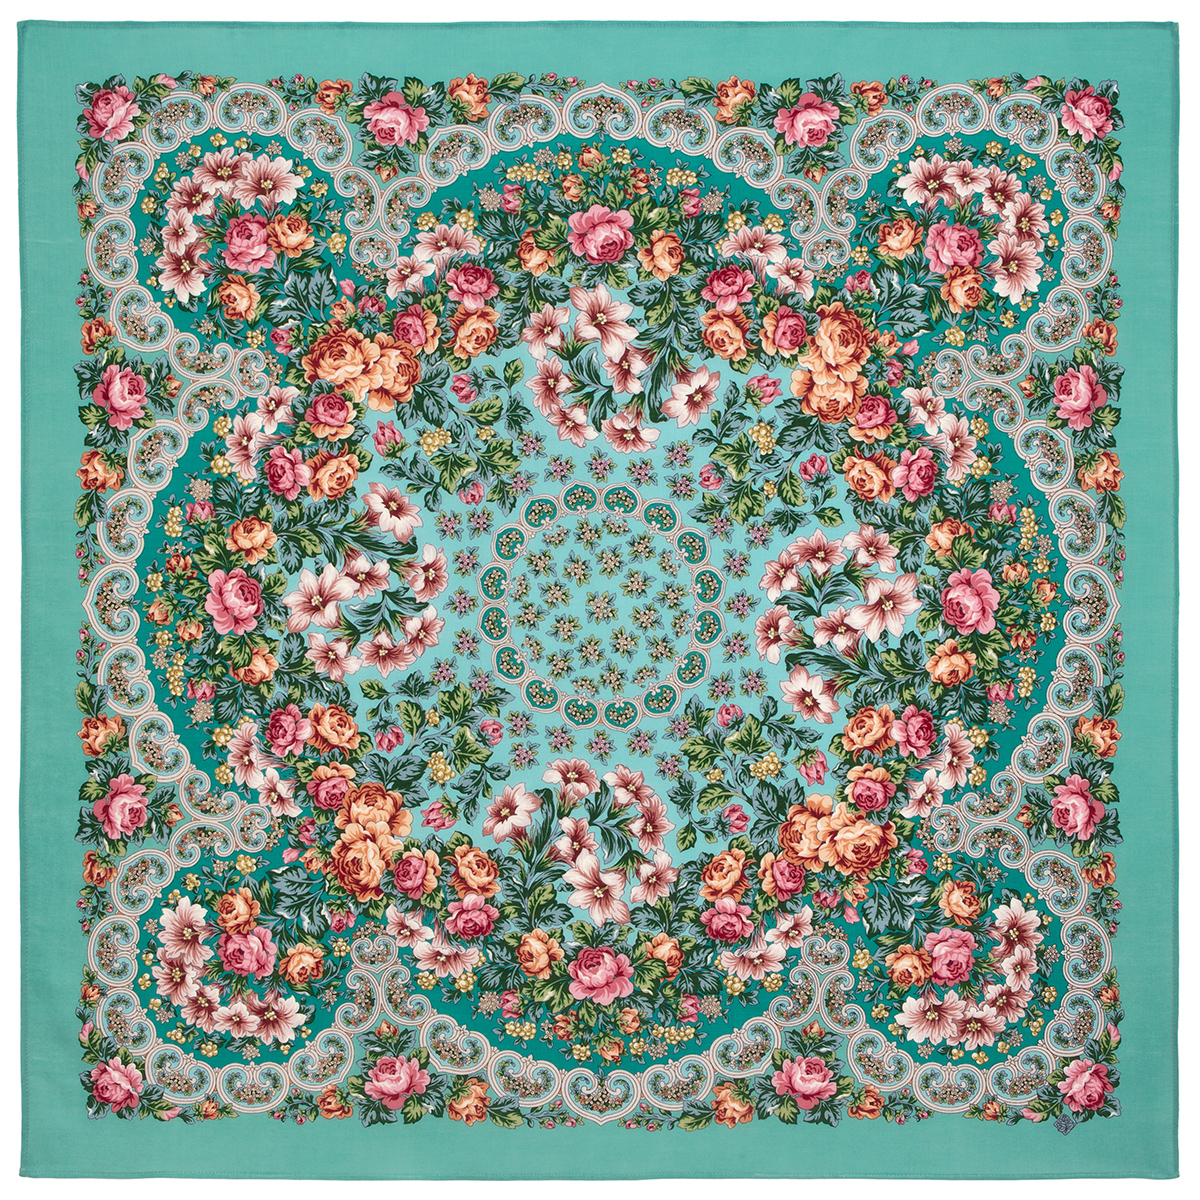 Платок женский Павловопосадский платок 1С125-4ПН бирюзовый/розовый/зеленый, 125х125 см